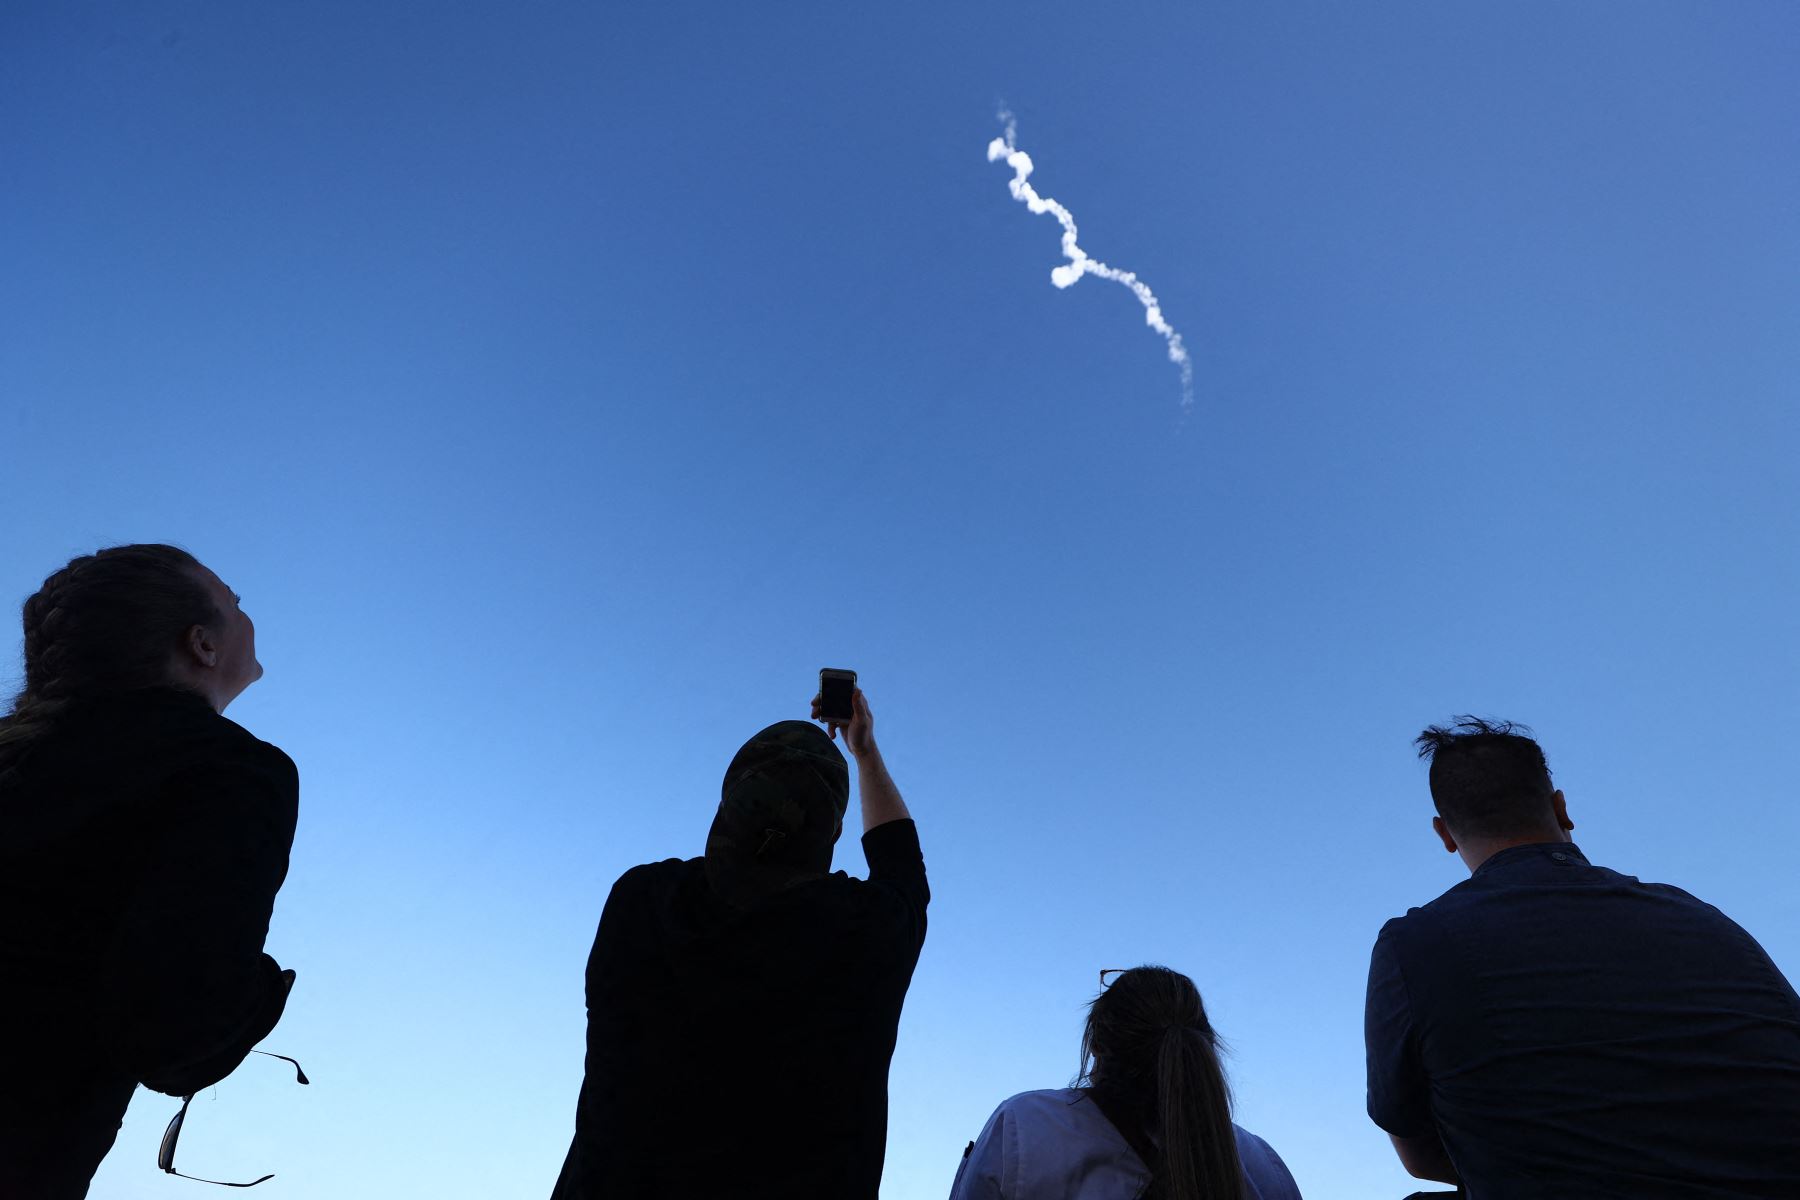 El New Shepard de Blue Origin despega de la plataforma de lanzamiento, cerca de Van Horn, Texas. La misión NS-18, es el segundo vuelo espacial humano de la compañía, propiedad del fundador de Amazon, Jeff Bezos. Foto: AFP